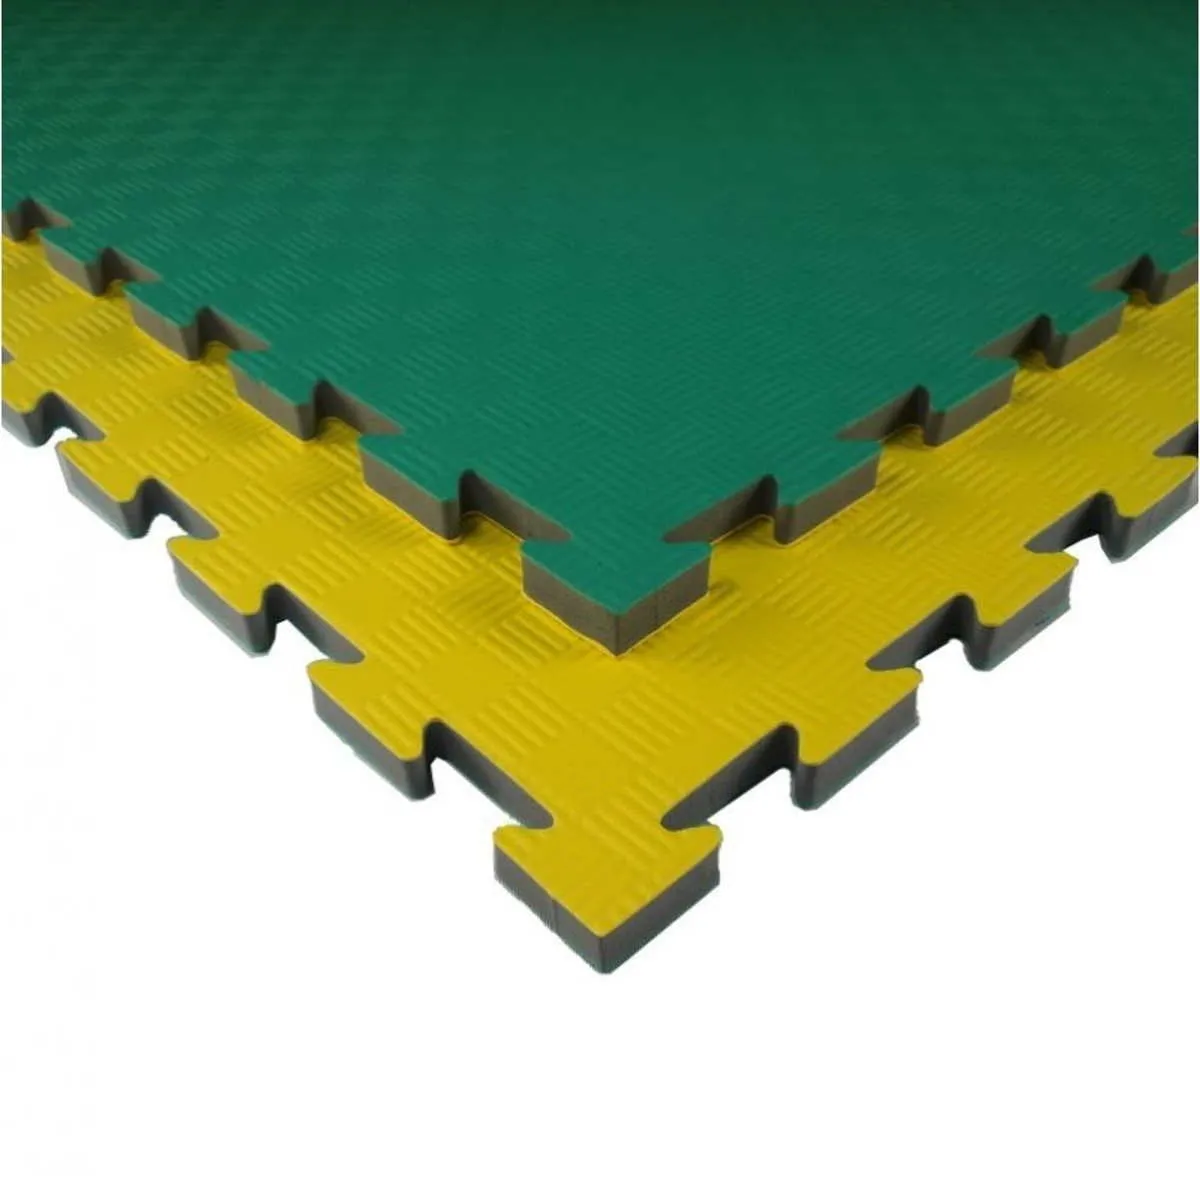 Mat Martial arts mat T20X yellow/green 100 cm x 100 cm x 2.1 cm